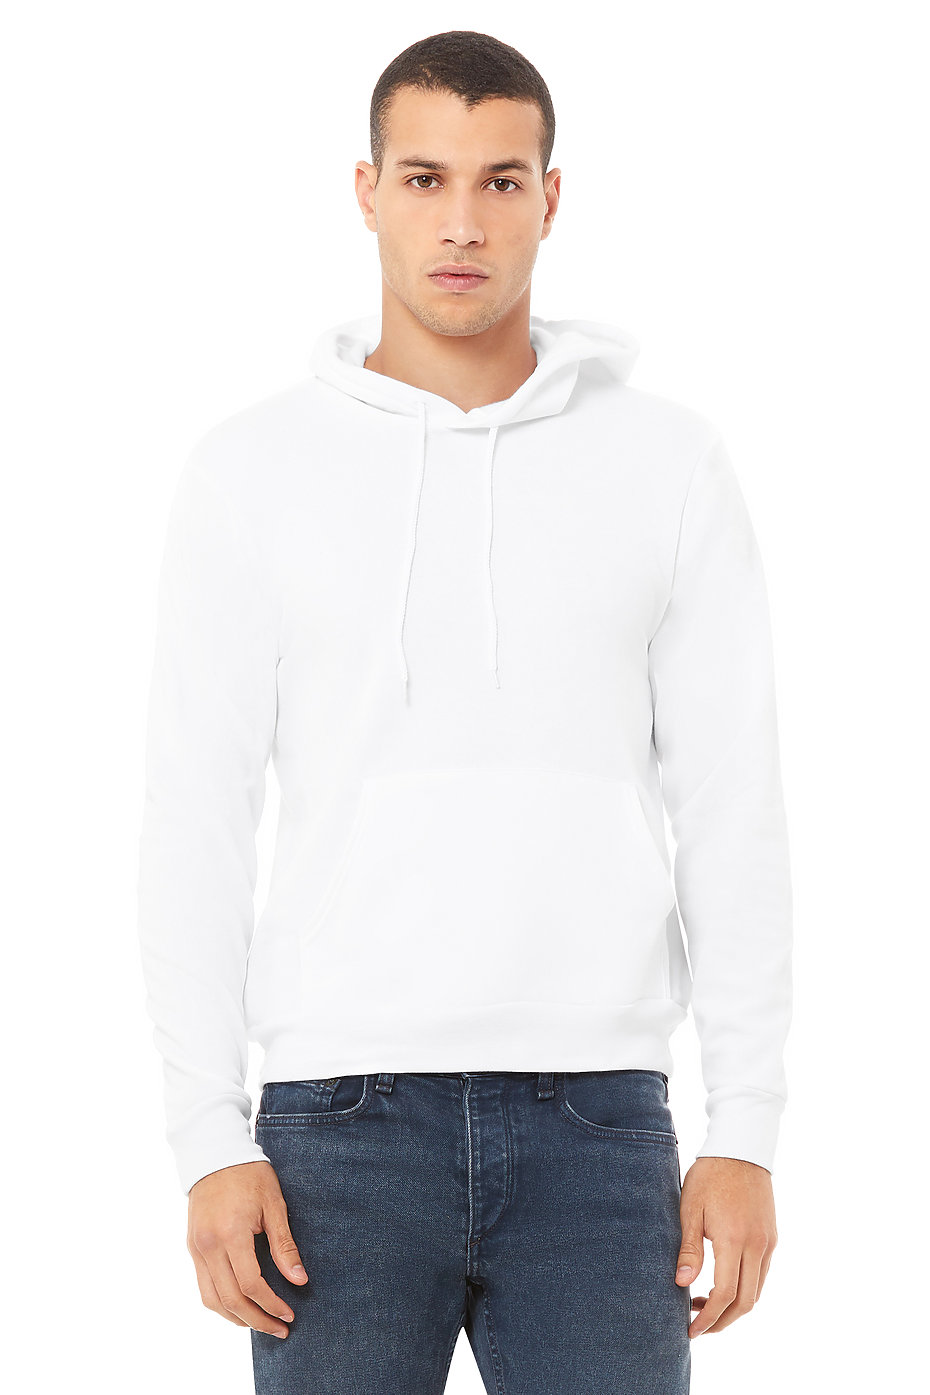 Hoodies For Men | Custom Sweatshirts | Pullover Hoodies | Mens Wholesale  Clothing | BELLA+CANVAS ®